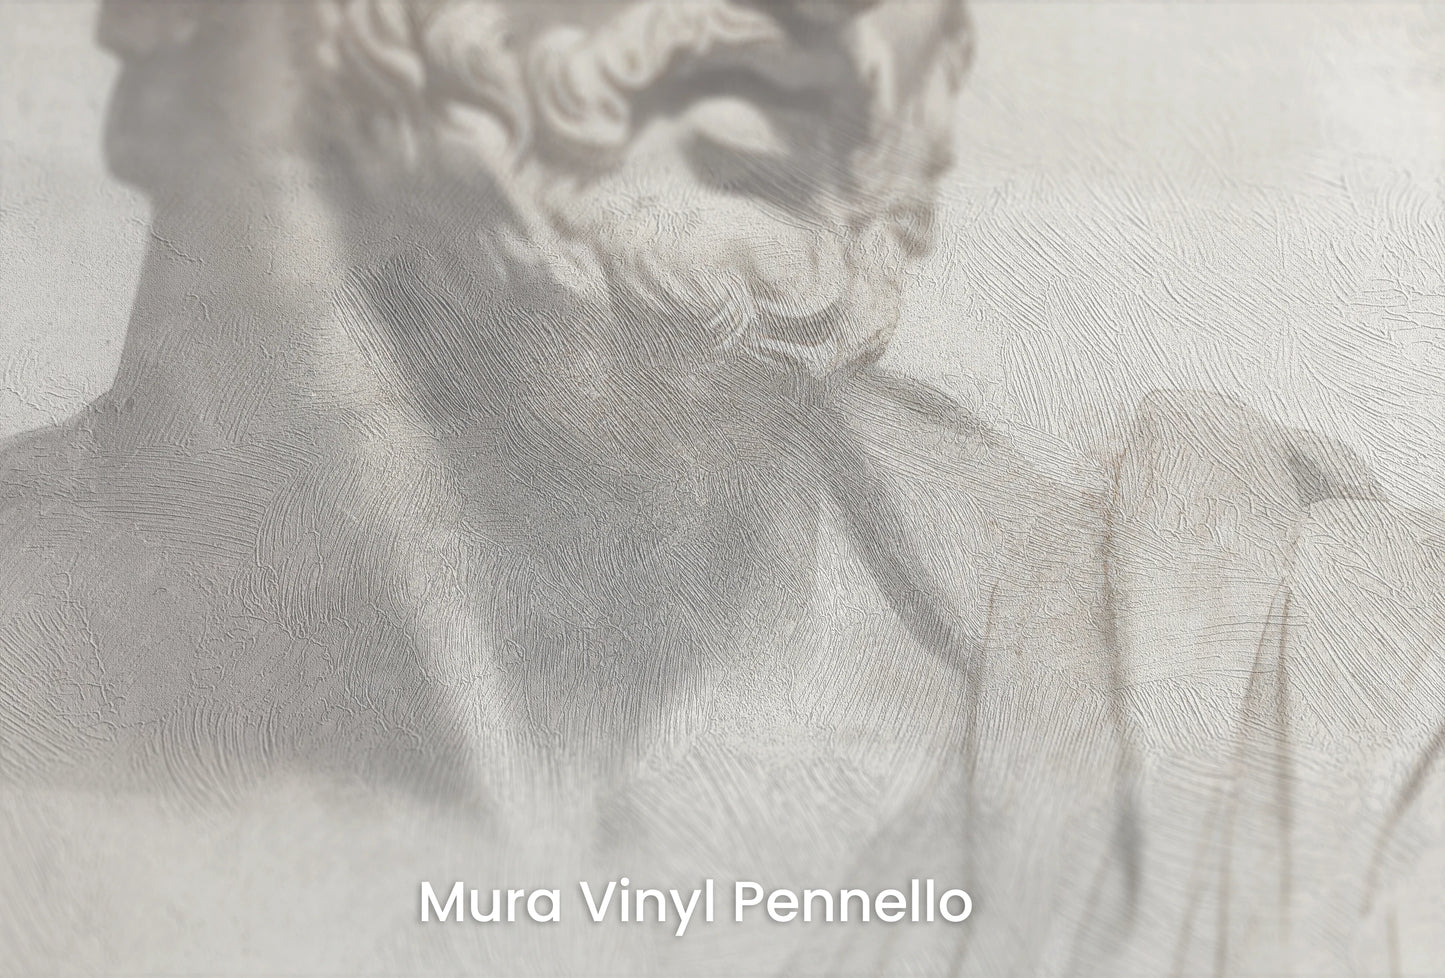 Zbliżenie na artystyczną fototapetę o nazwie Athenian Discourse na podłożu Mura Vinyl Pennello - faktura pociągnięć pędzla malarskiego.